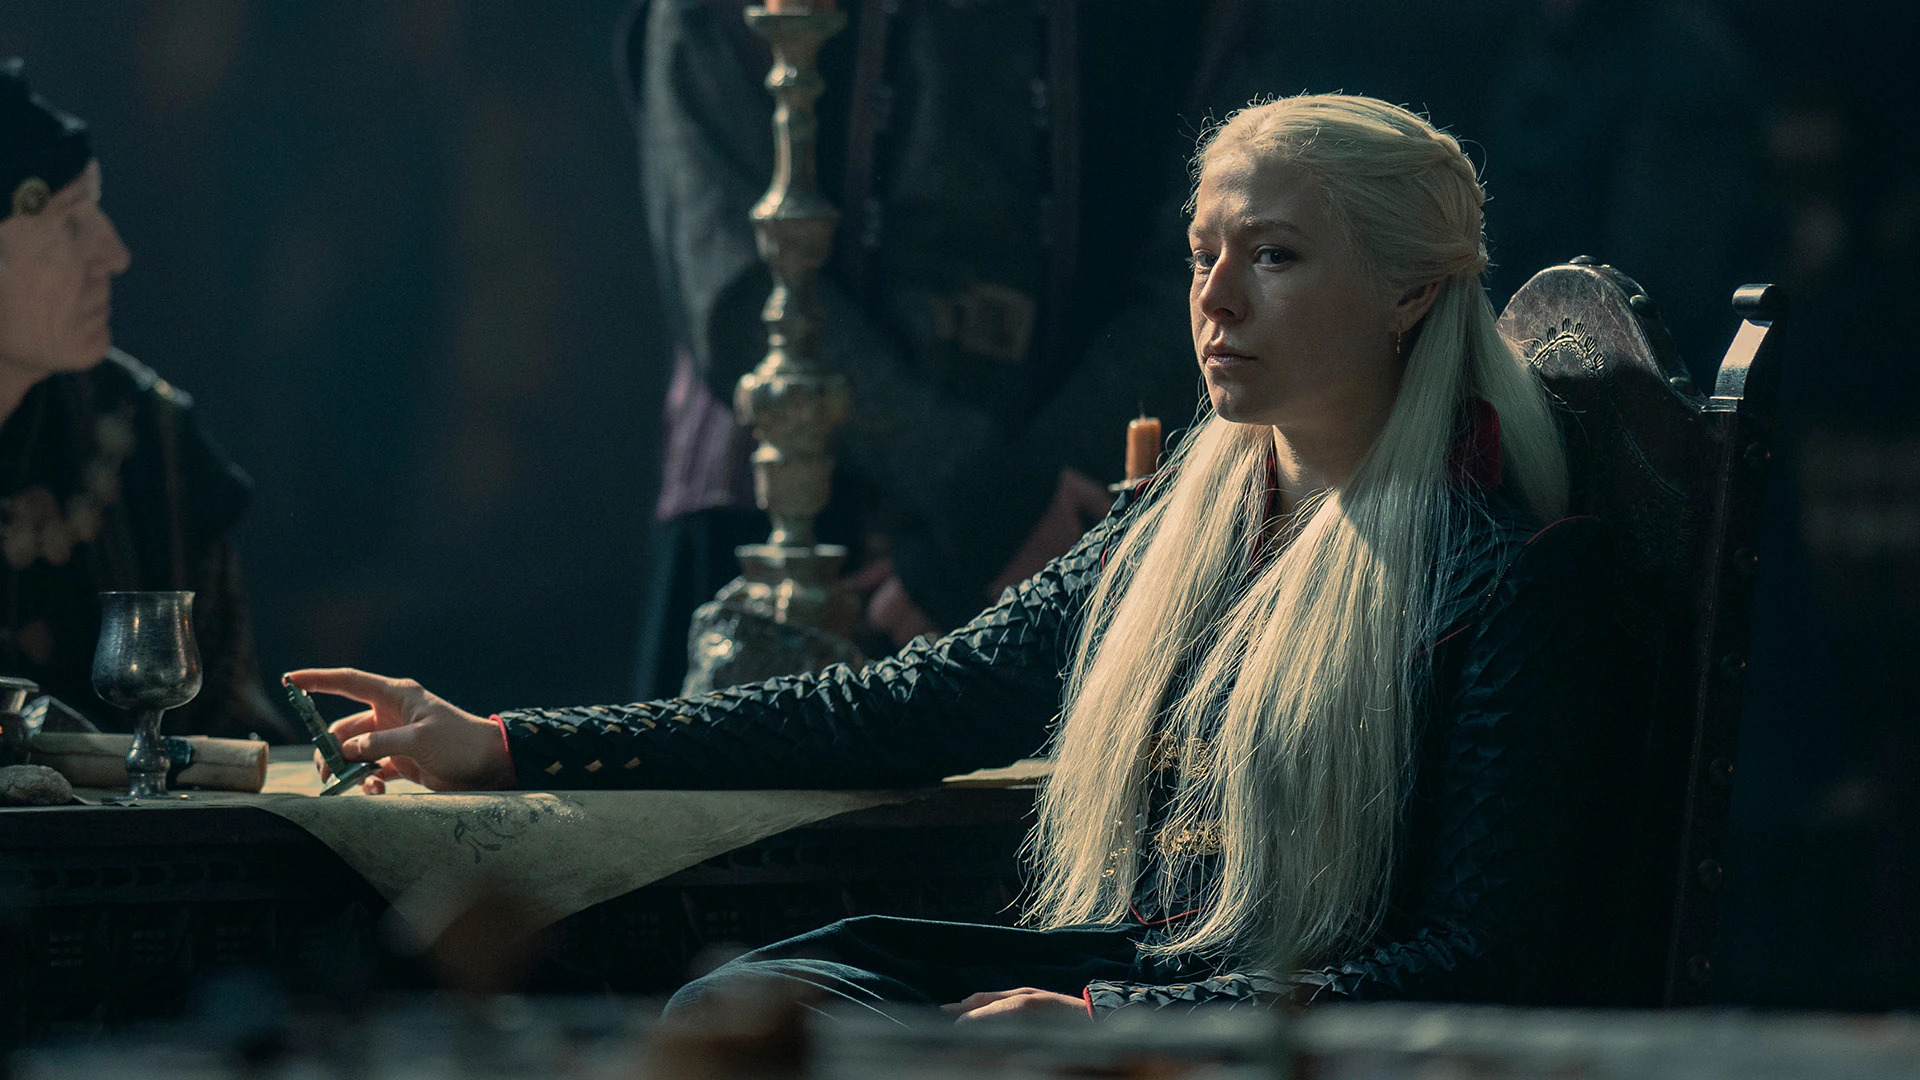 10-й эпизод “Дома дракона” на HBO посмотрели 9,3 миллиона зрителей - это крупнейший финал со времен “Игры престолов”